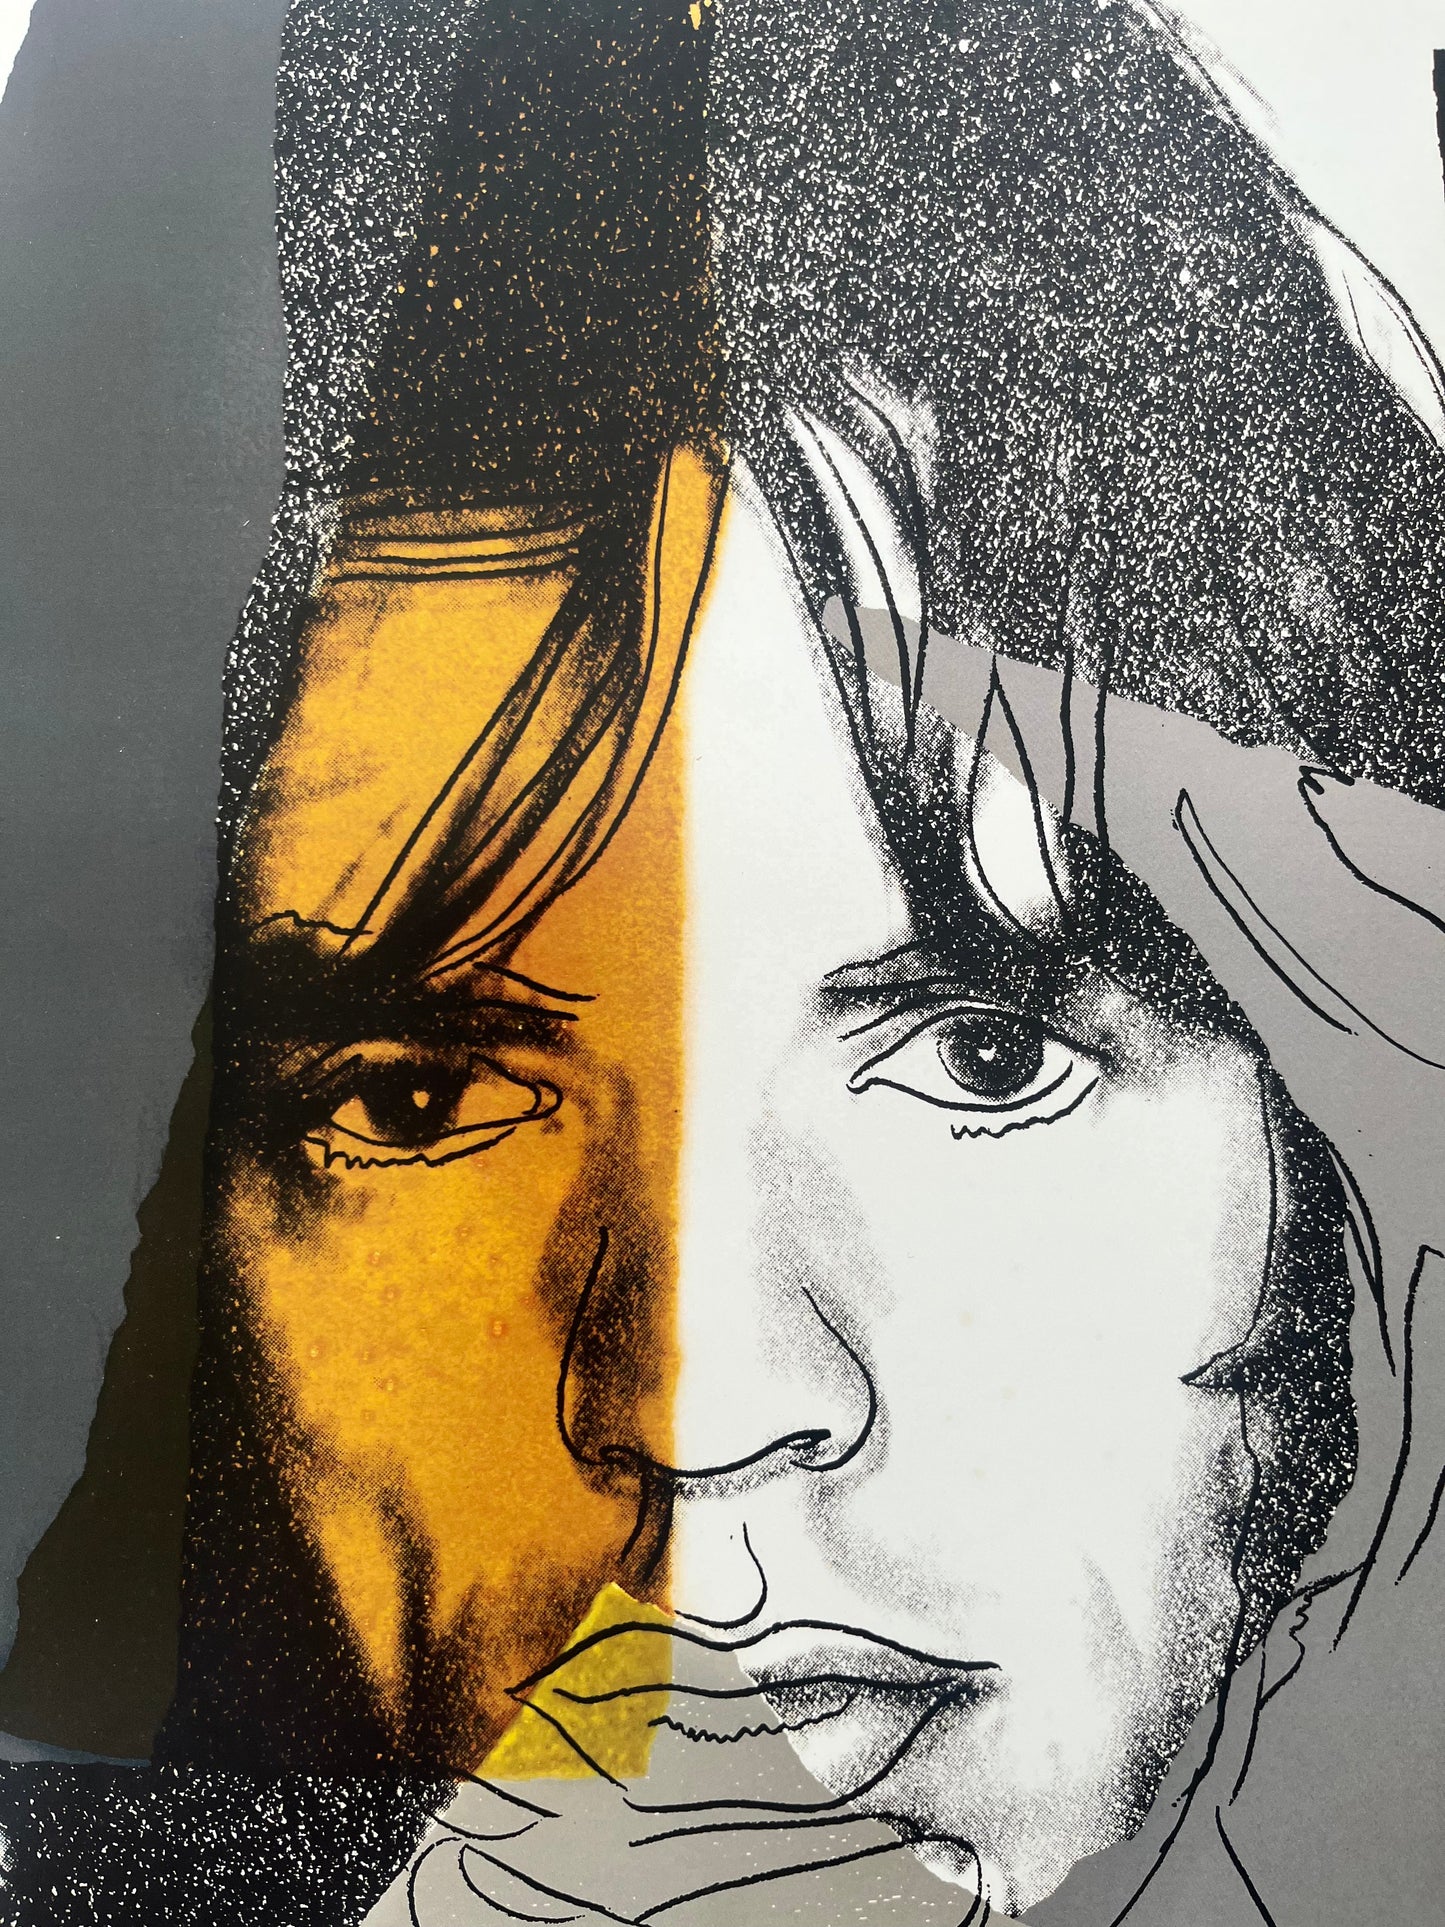 Ensemble de 2 Sérigraphies Offset - Andy Warhol x MocoMuseum